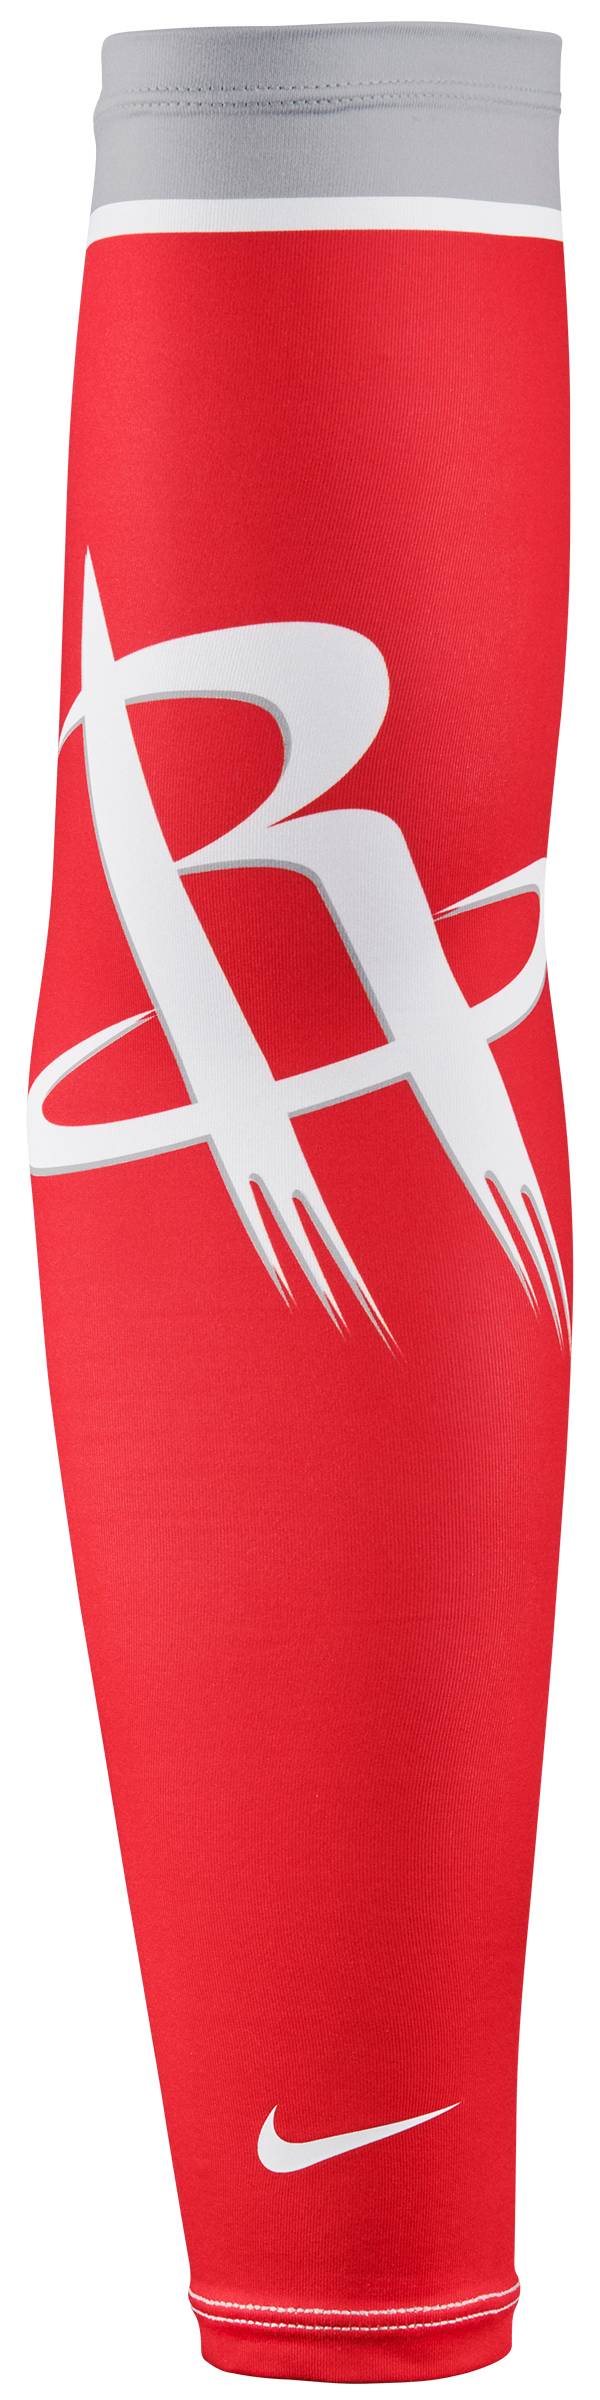 Nike Houston Rockets Shooter Arm Sleeve product image